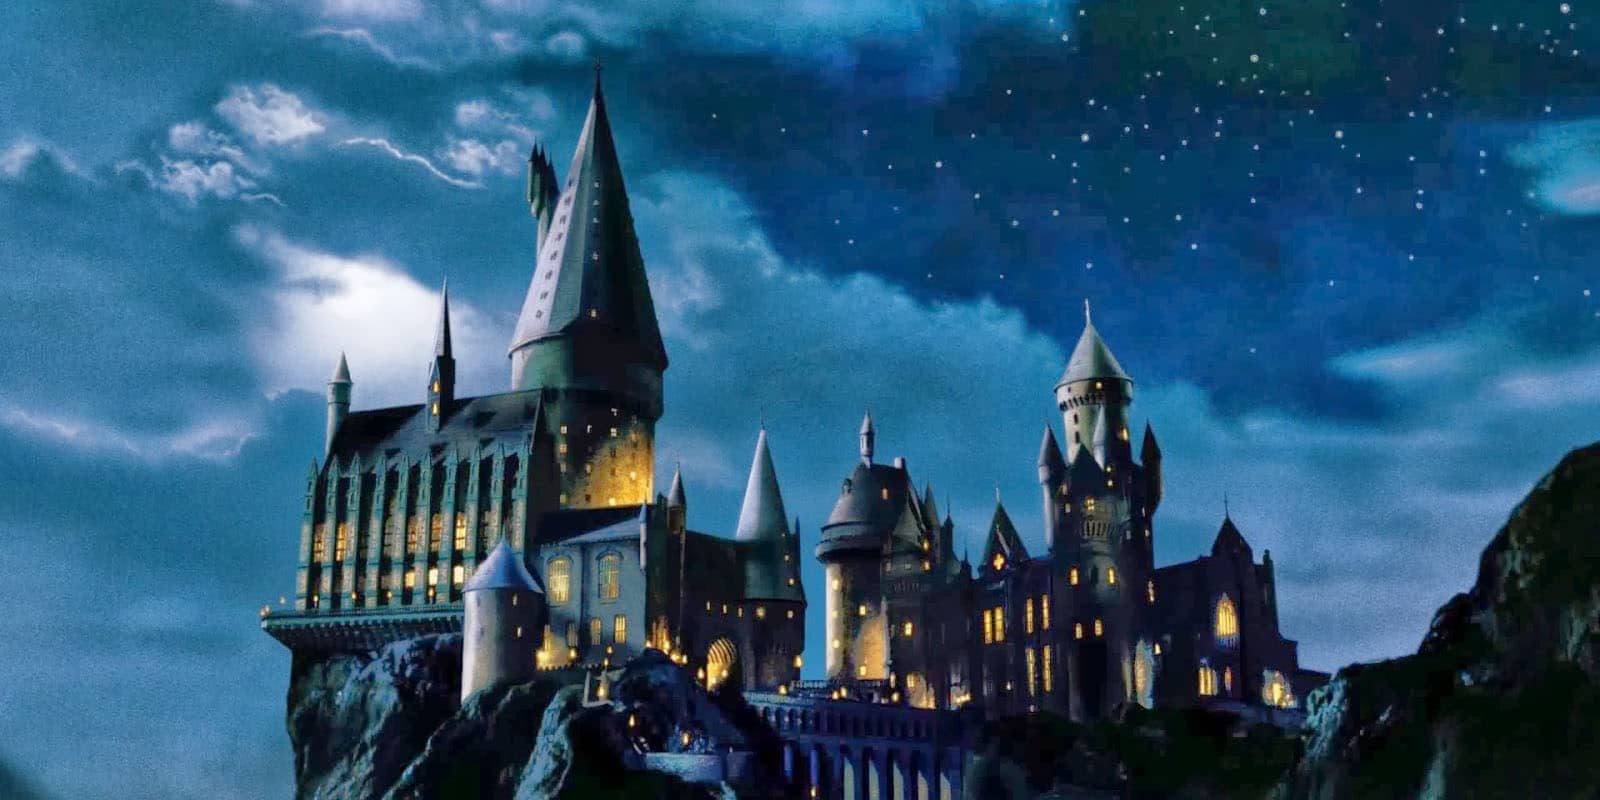 harry potter hogwarts legacy date de sortie